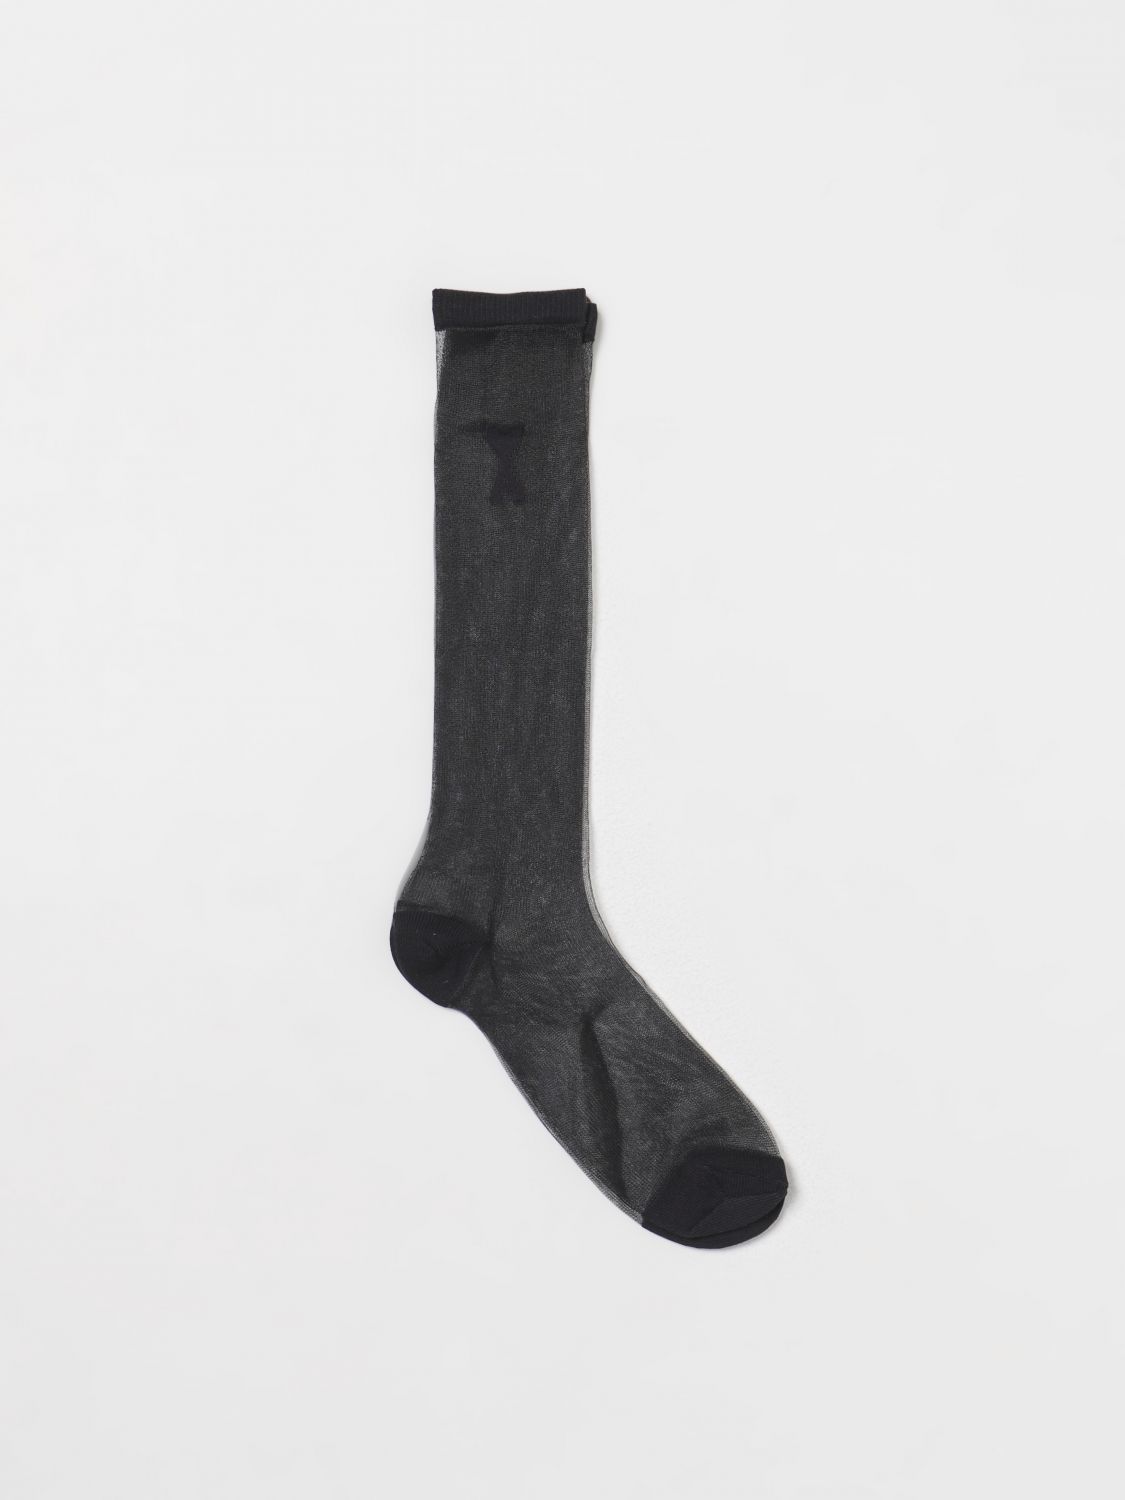 Shop Ami Alexandre Mattiussi Socks Ami Paris Woman Color Black